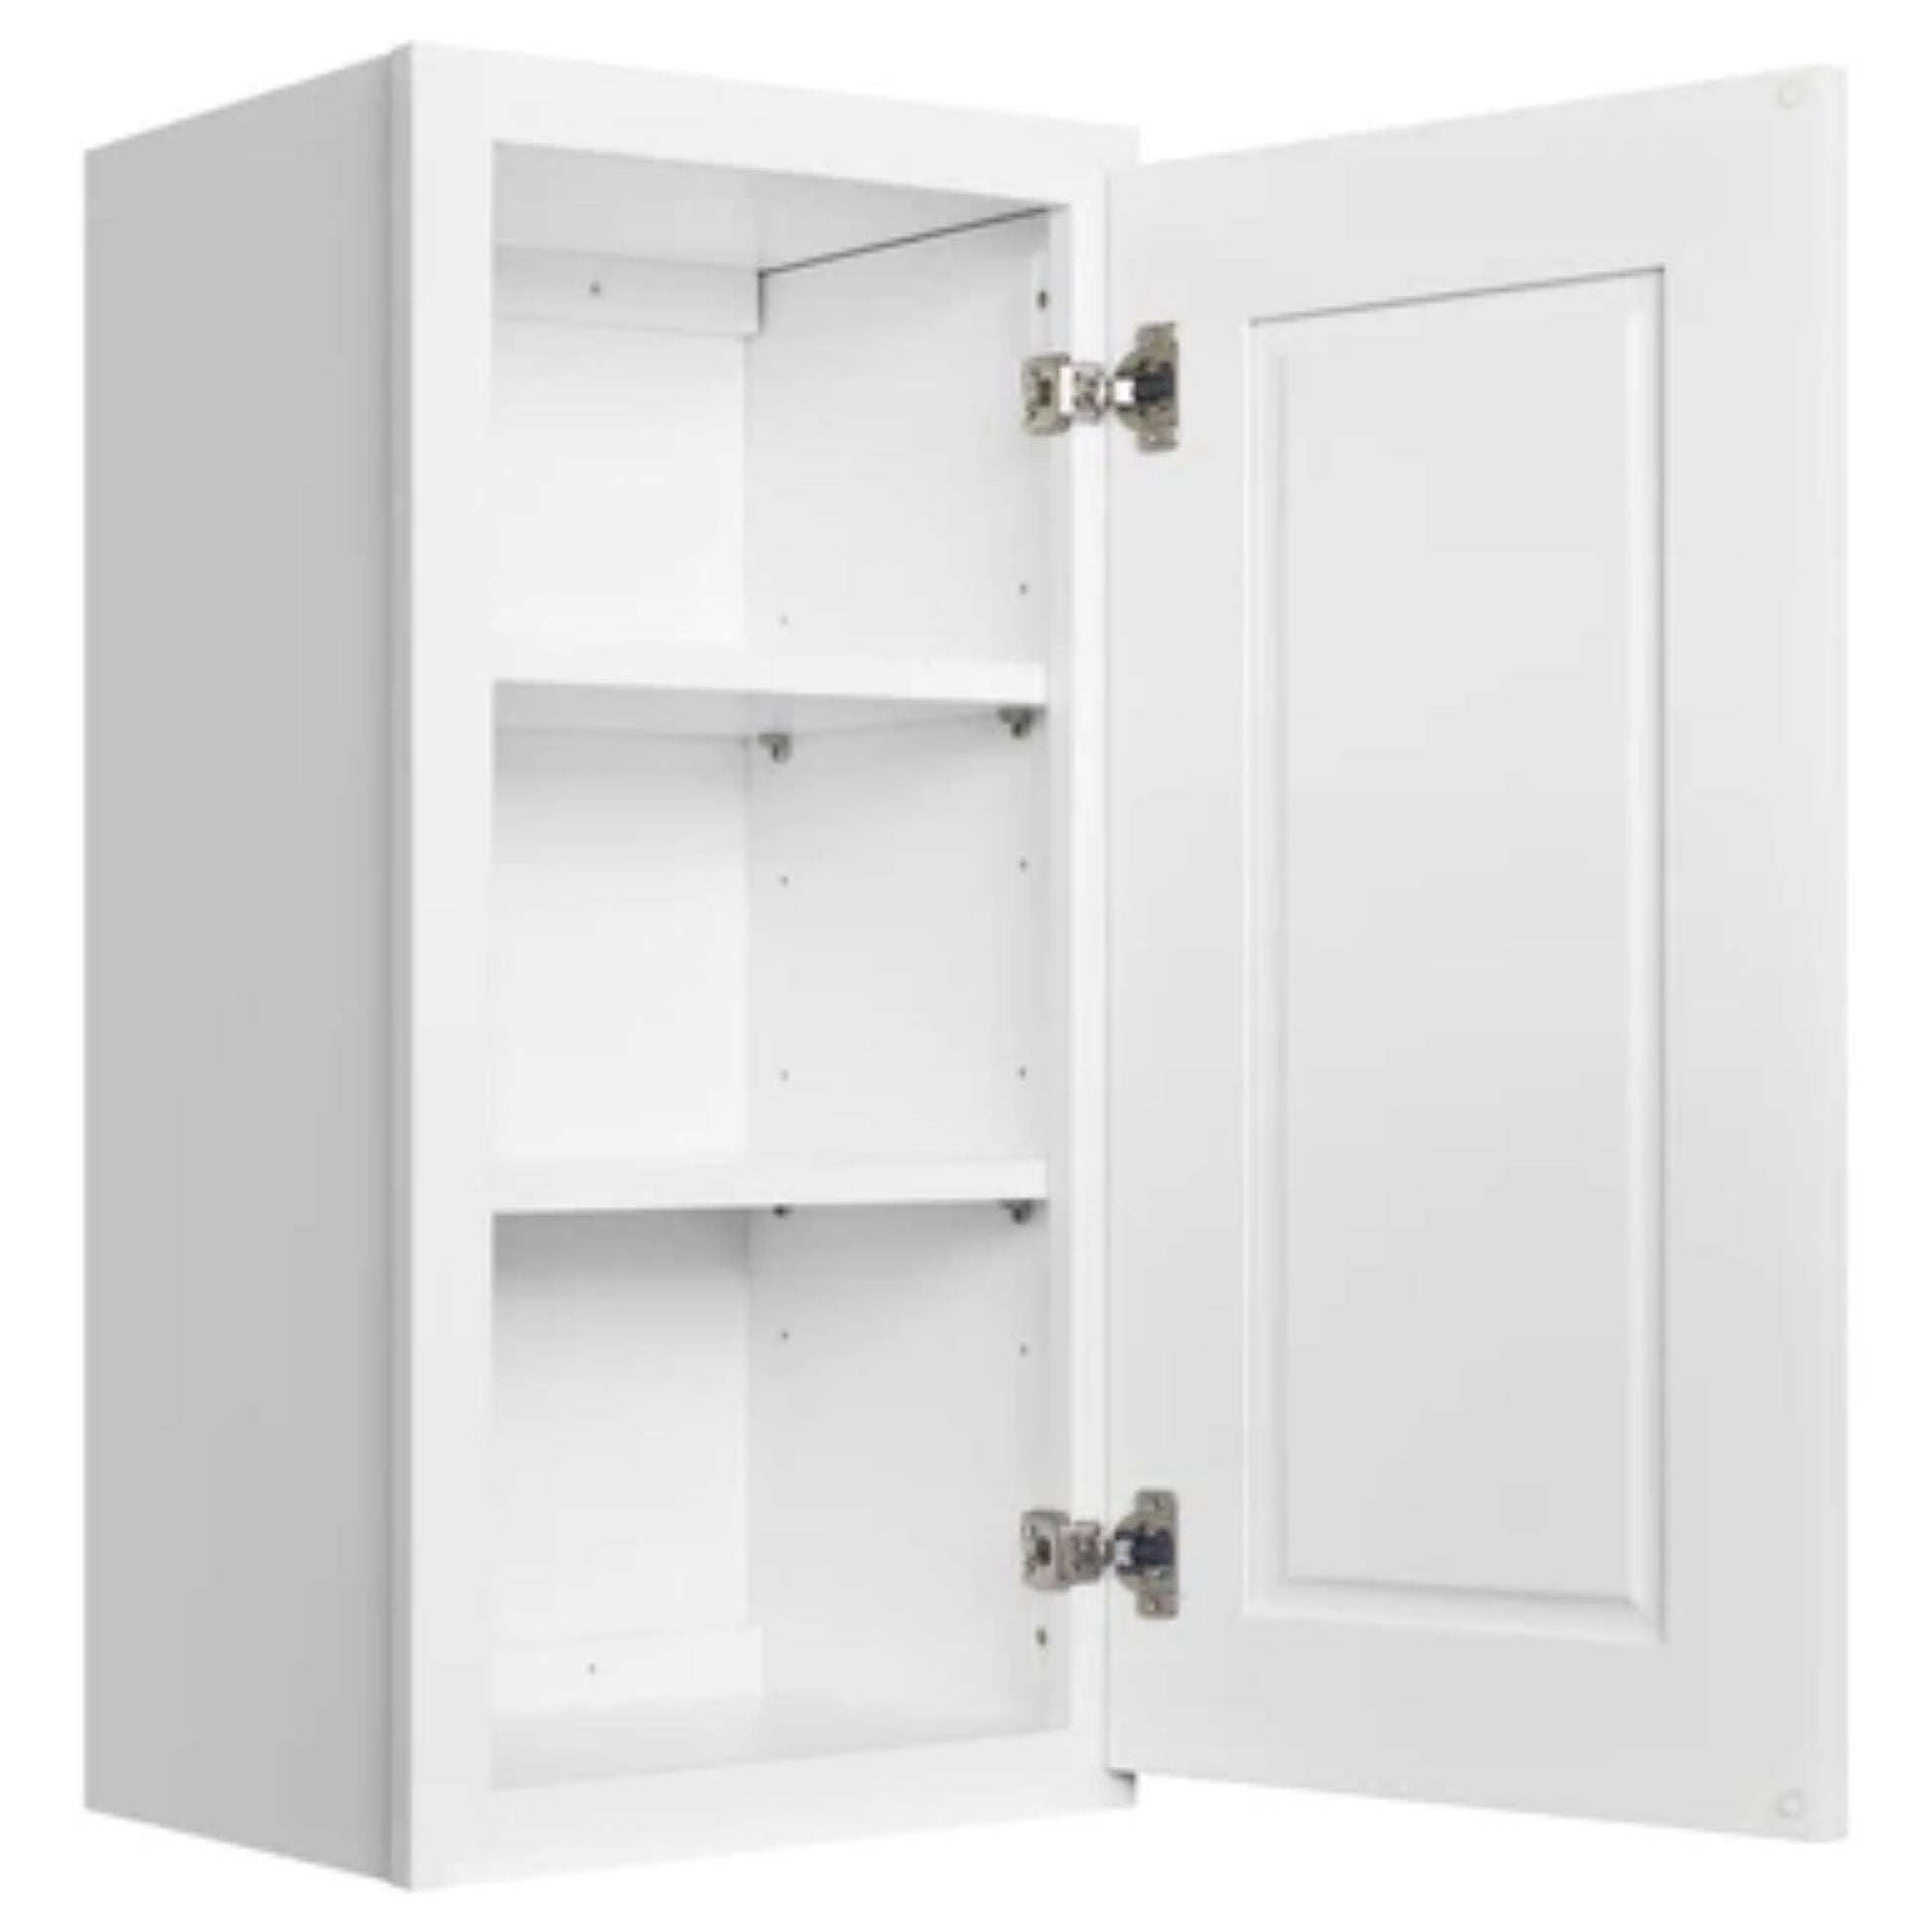 LessCare 33" x 36" x 12" Alpina White Wall Kitchen Cabinet - W3336